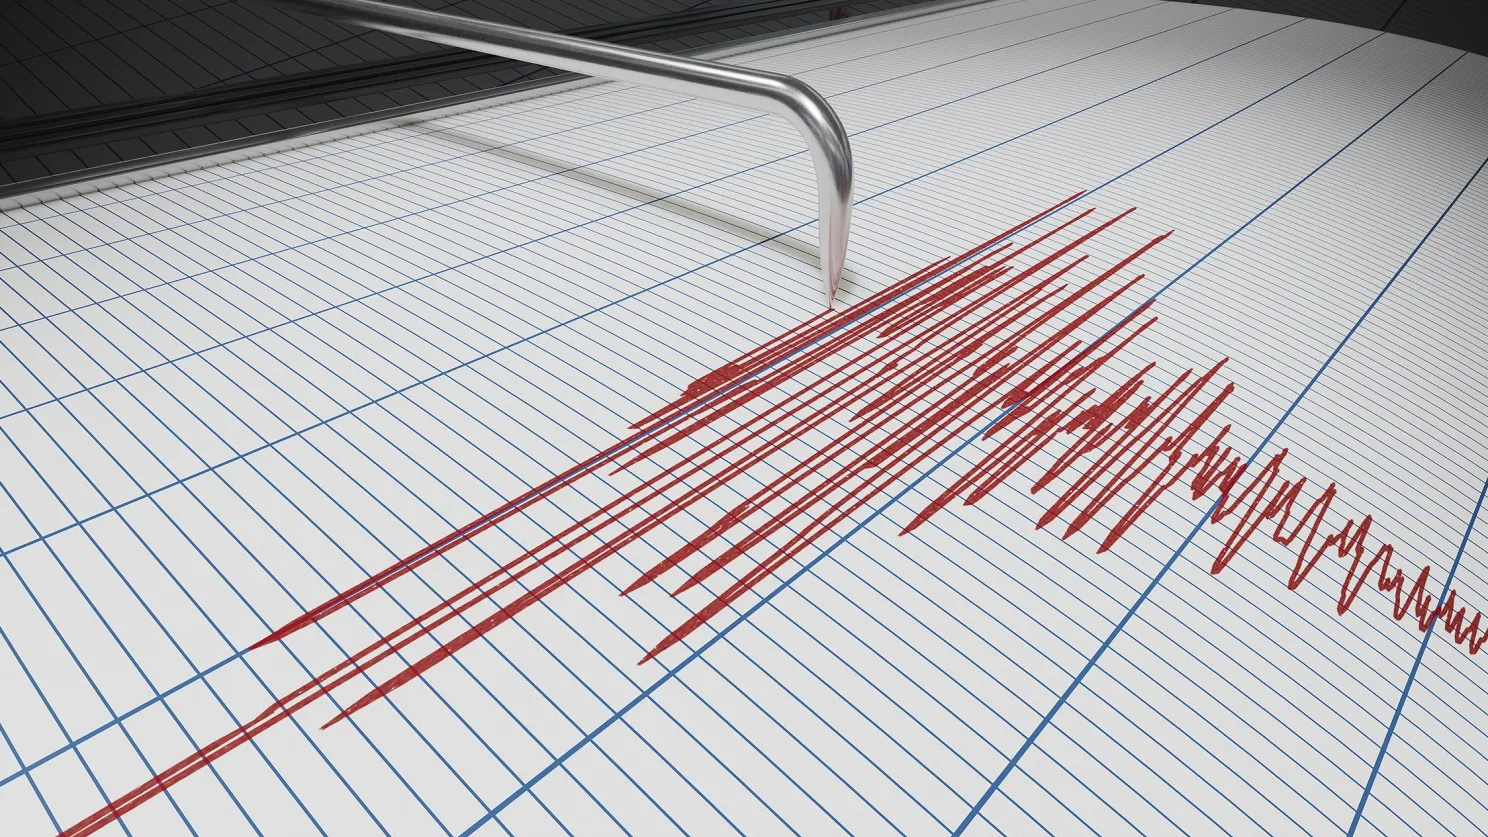  ‣ adn24 terremoto in grecia avvertito anche in puglia e calabria: magnitudo 4.5